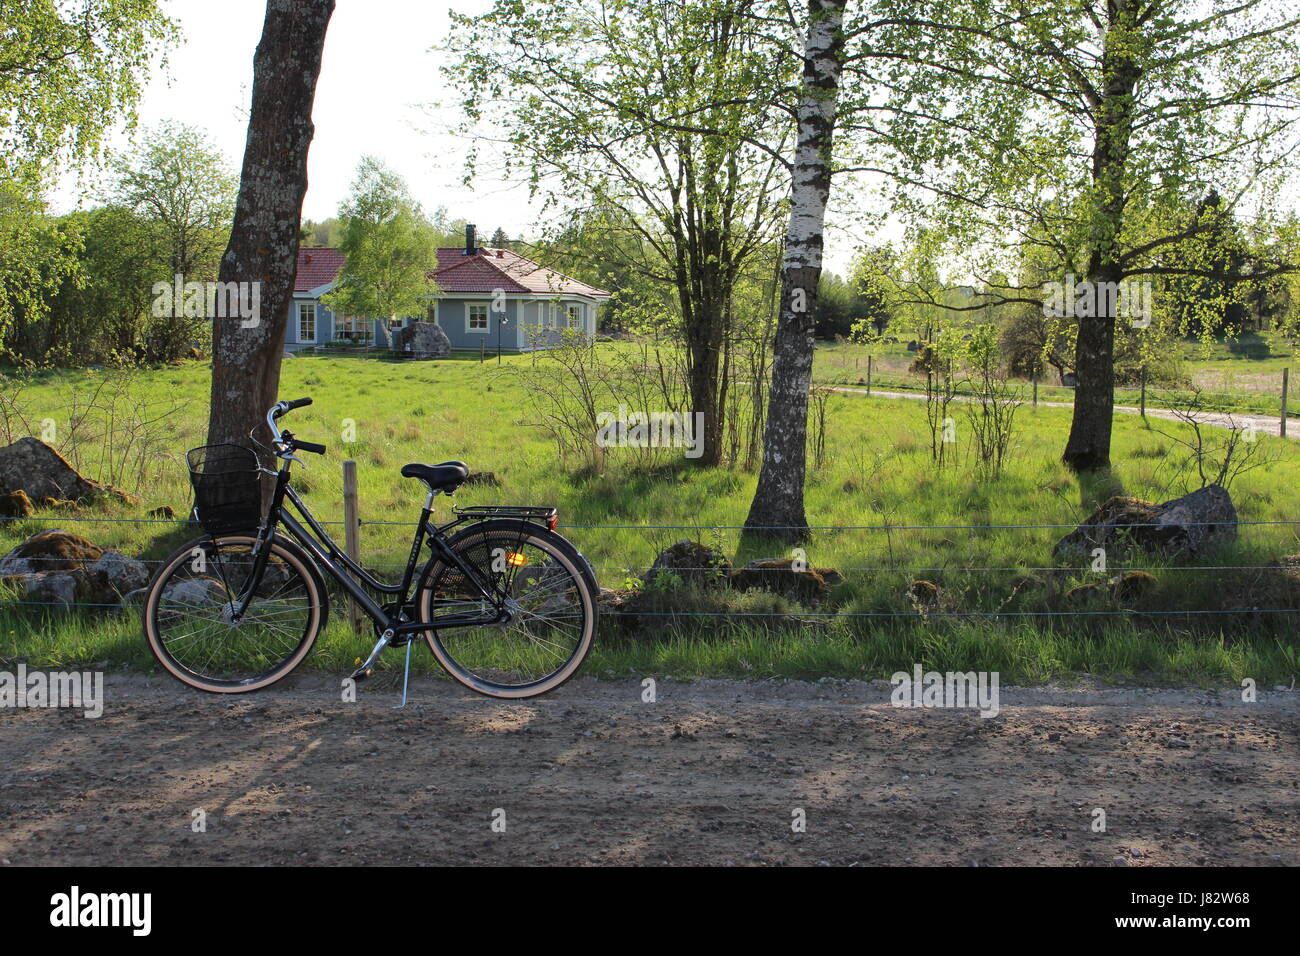 Una bicicleta negra junto a una carretera en un campo sueco vecindario. Foto de stock